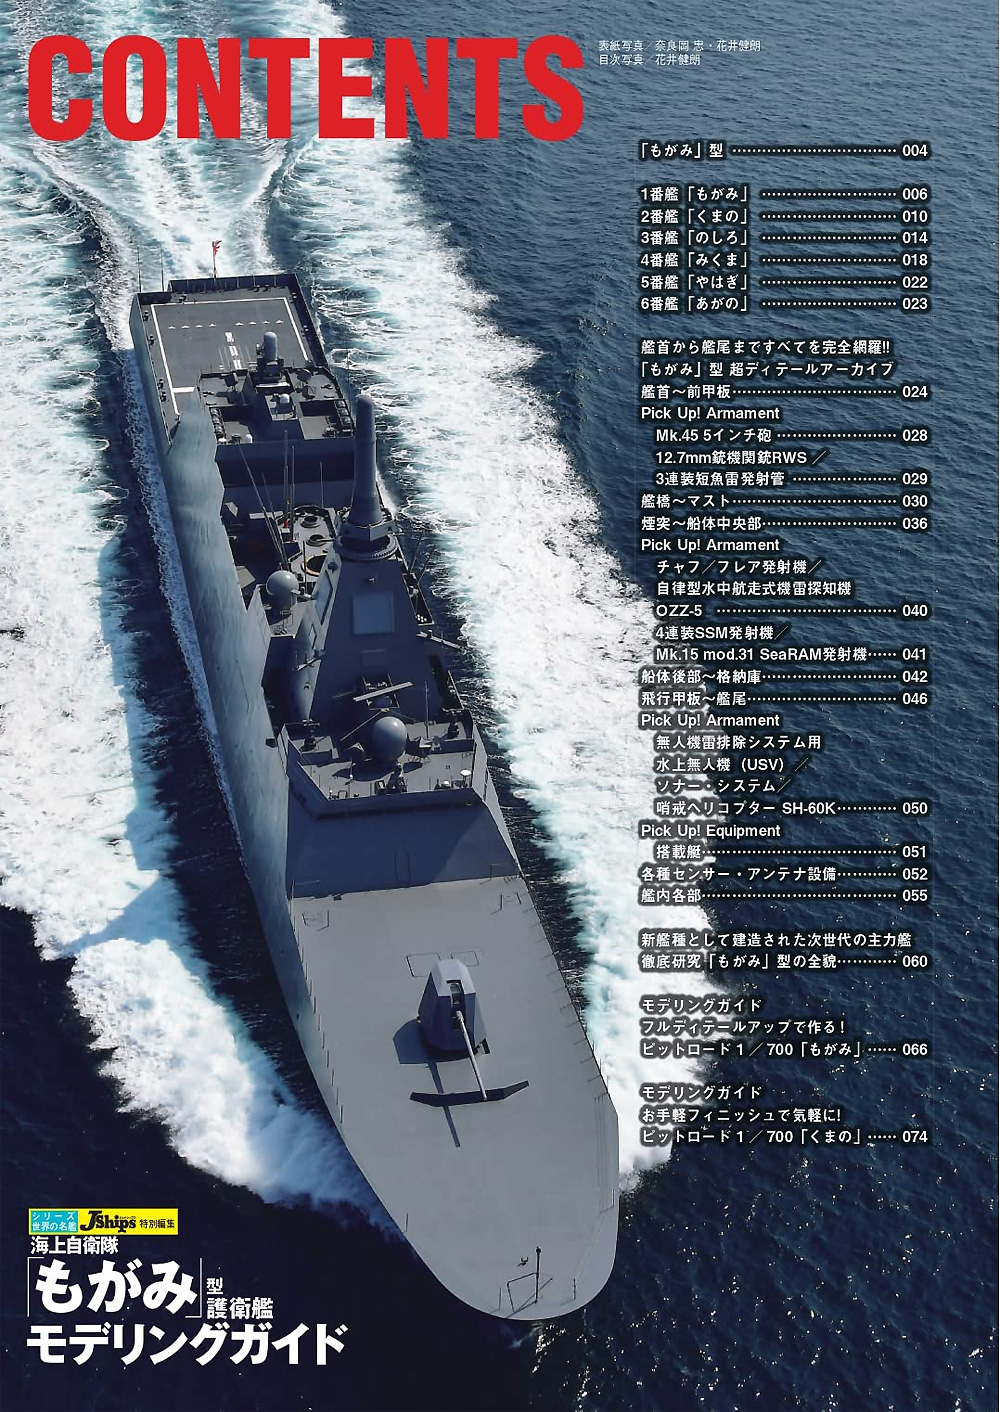 海上自衛隊 もがみ型護衛艦 モデリングガイド 本 (イカロス出版 世界の名艦 No.61859-67) 商品画像_1